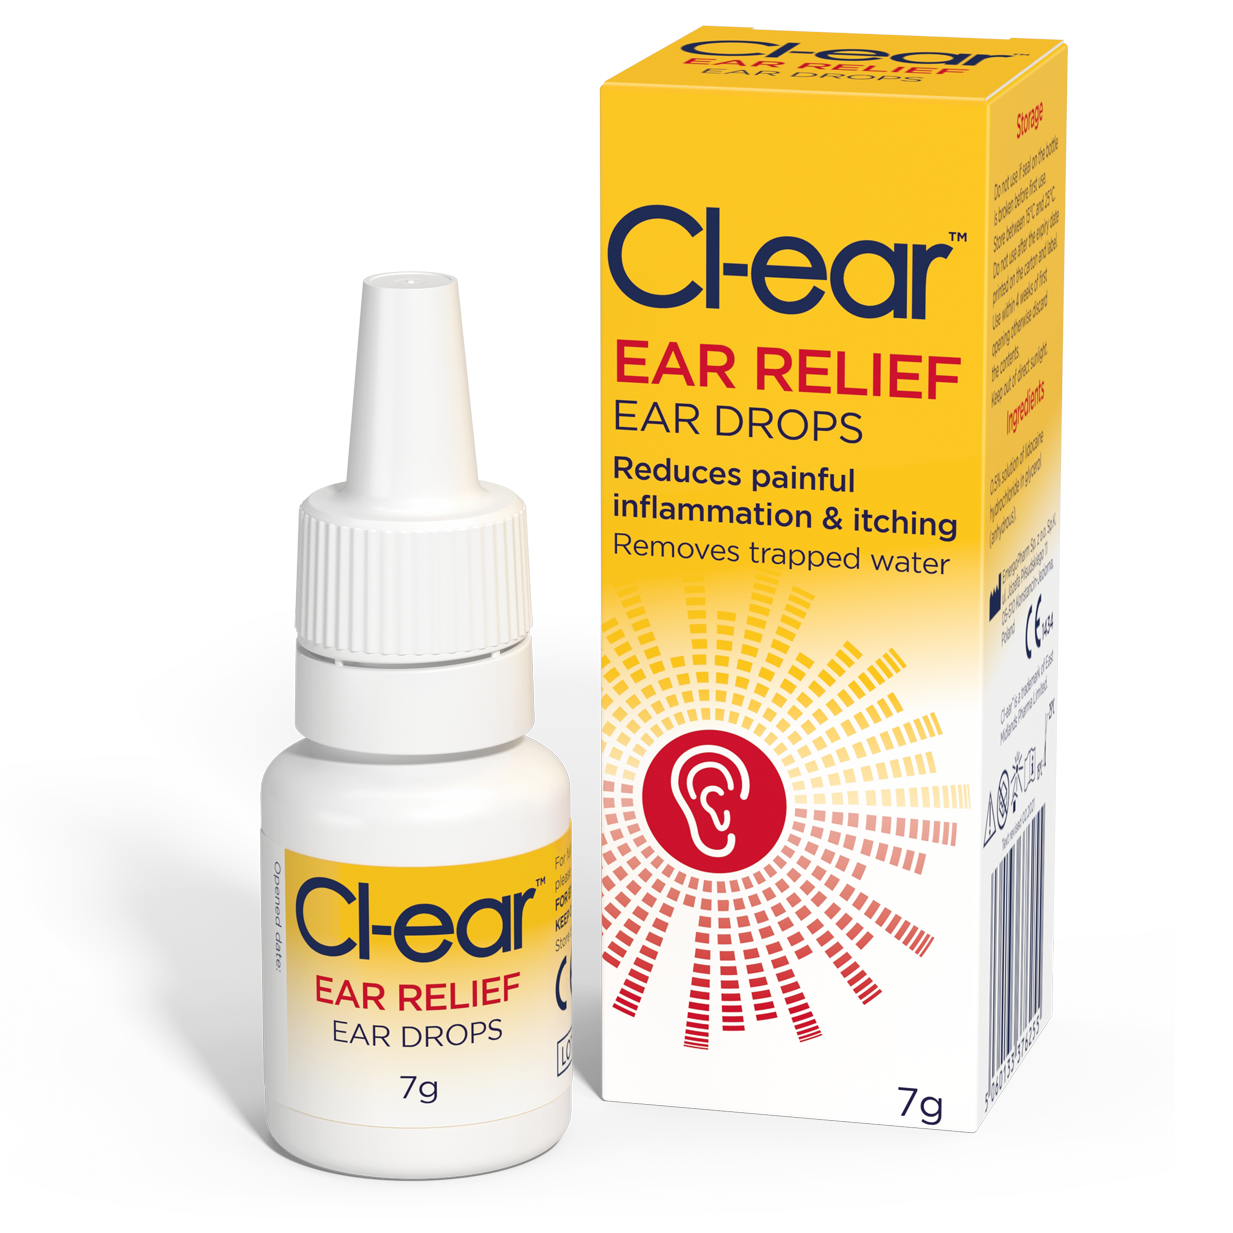 Cl-ear Ear Relief Ear Drops 7g